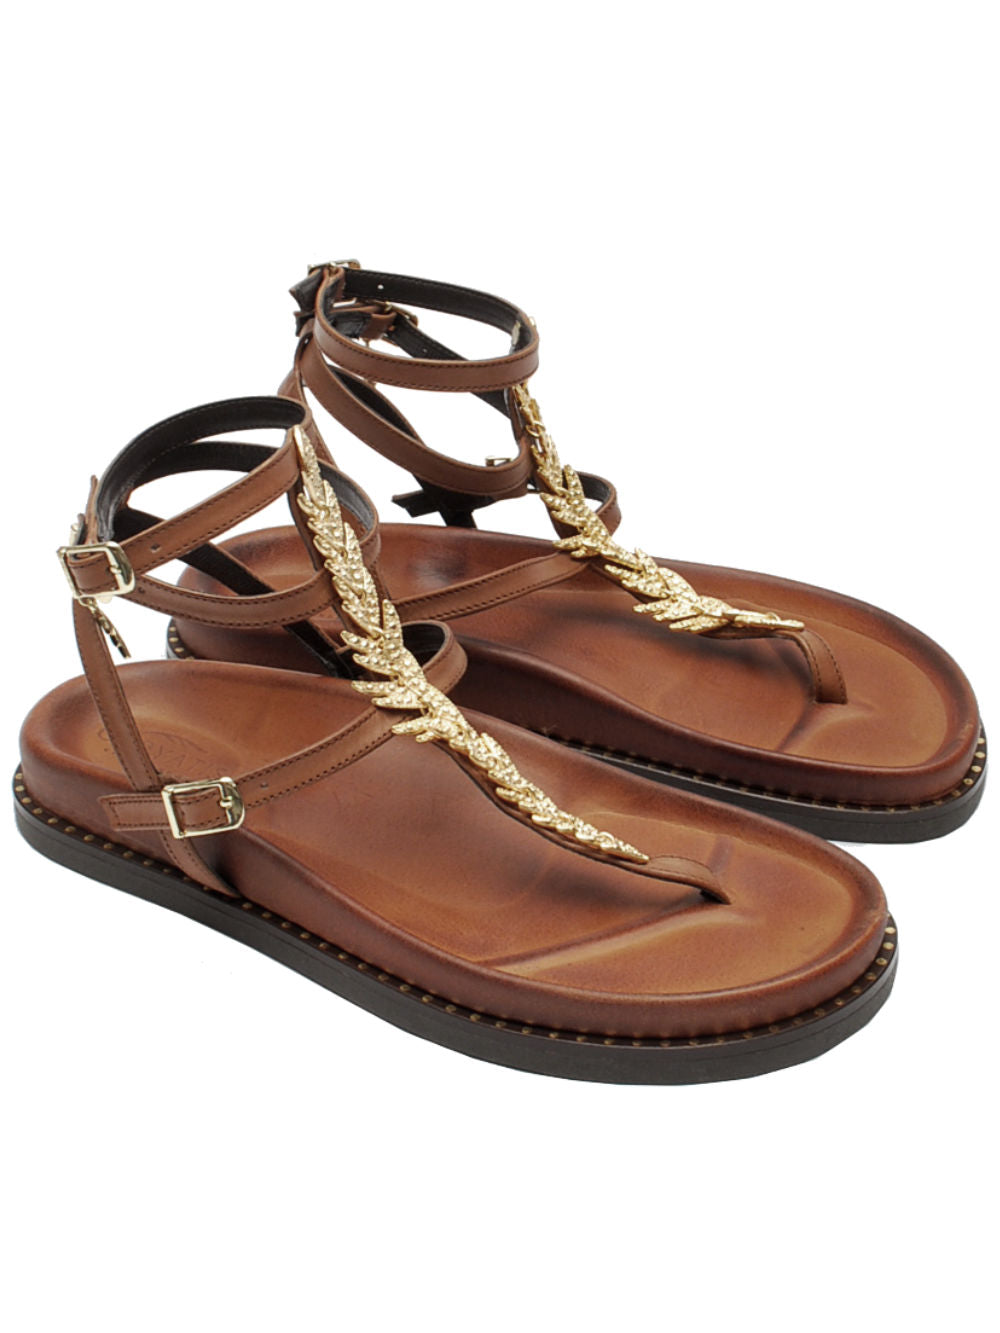 Caryatis sandalo accessori 681009 brown gold pe24